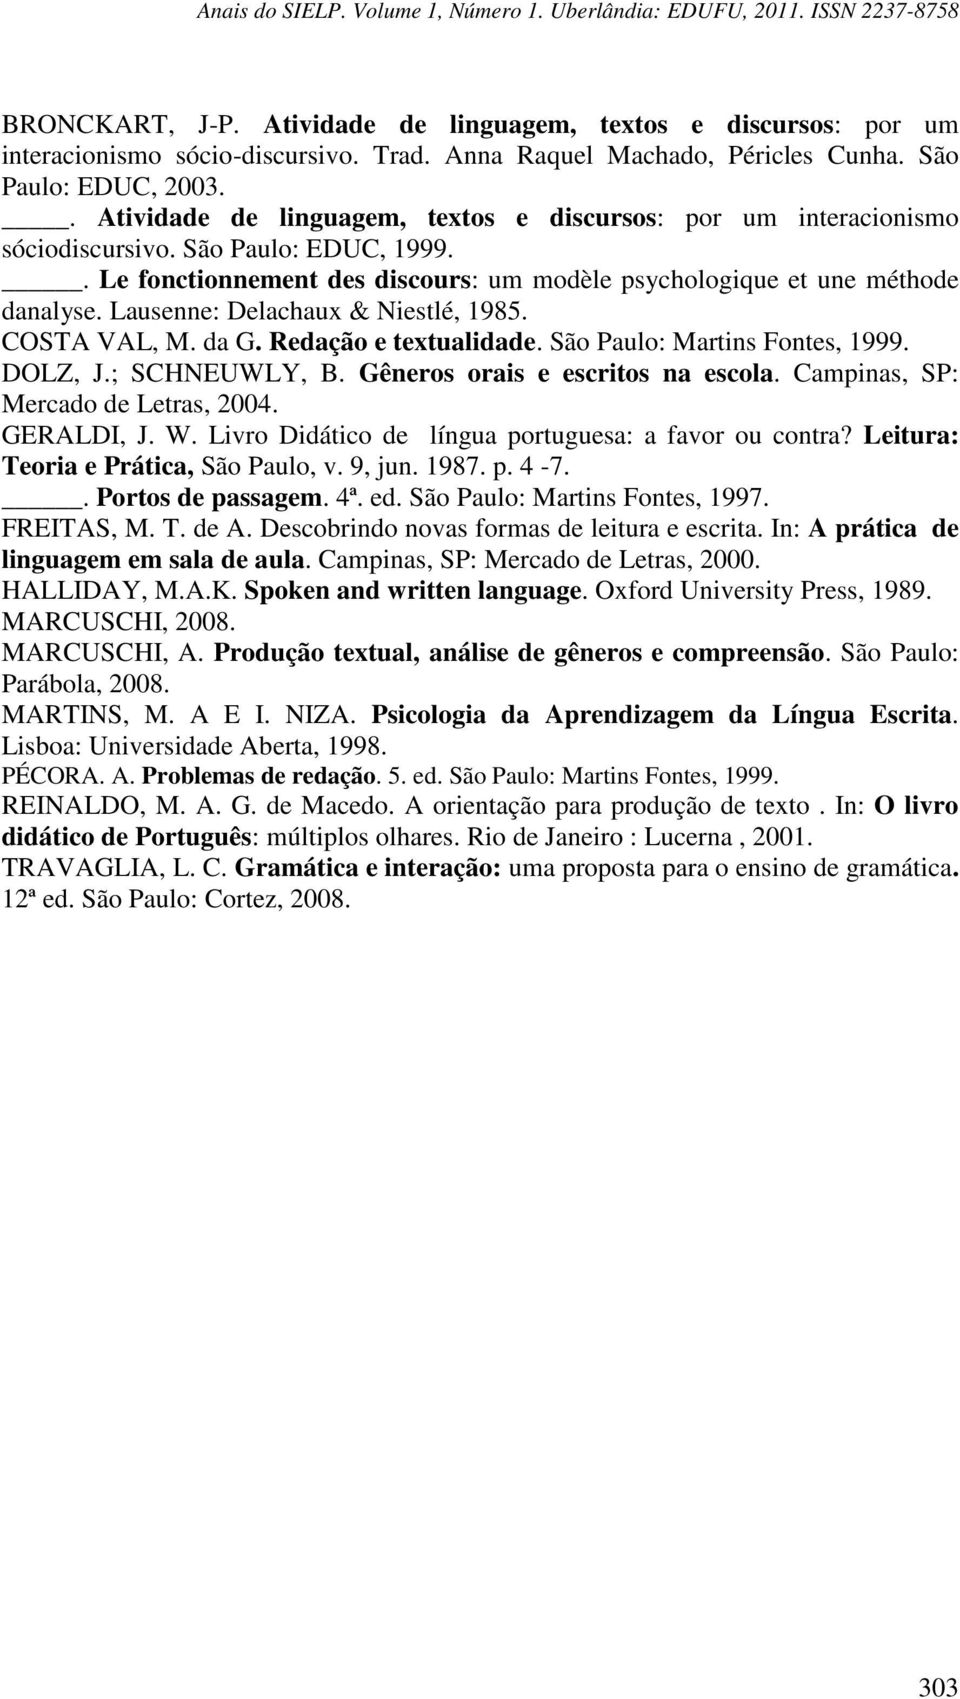 Lausenne: Delachaux & Niestlé, 1985. COSTA VAL, M. da G. Redação e textualidade. São Paulo: Martins Fontes, 1999. DOLZ, J.; SCHNEUWLY, B. Gêneros orais e escritos na escola.